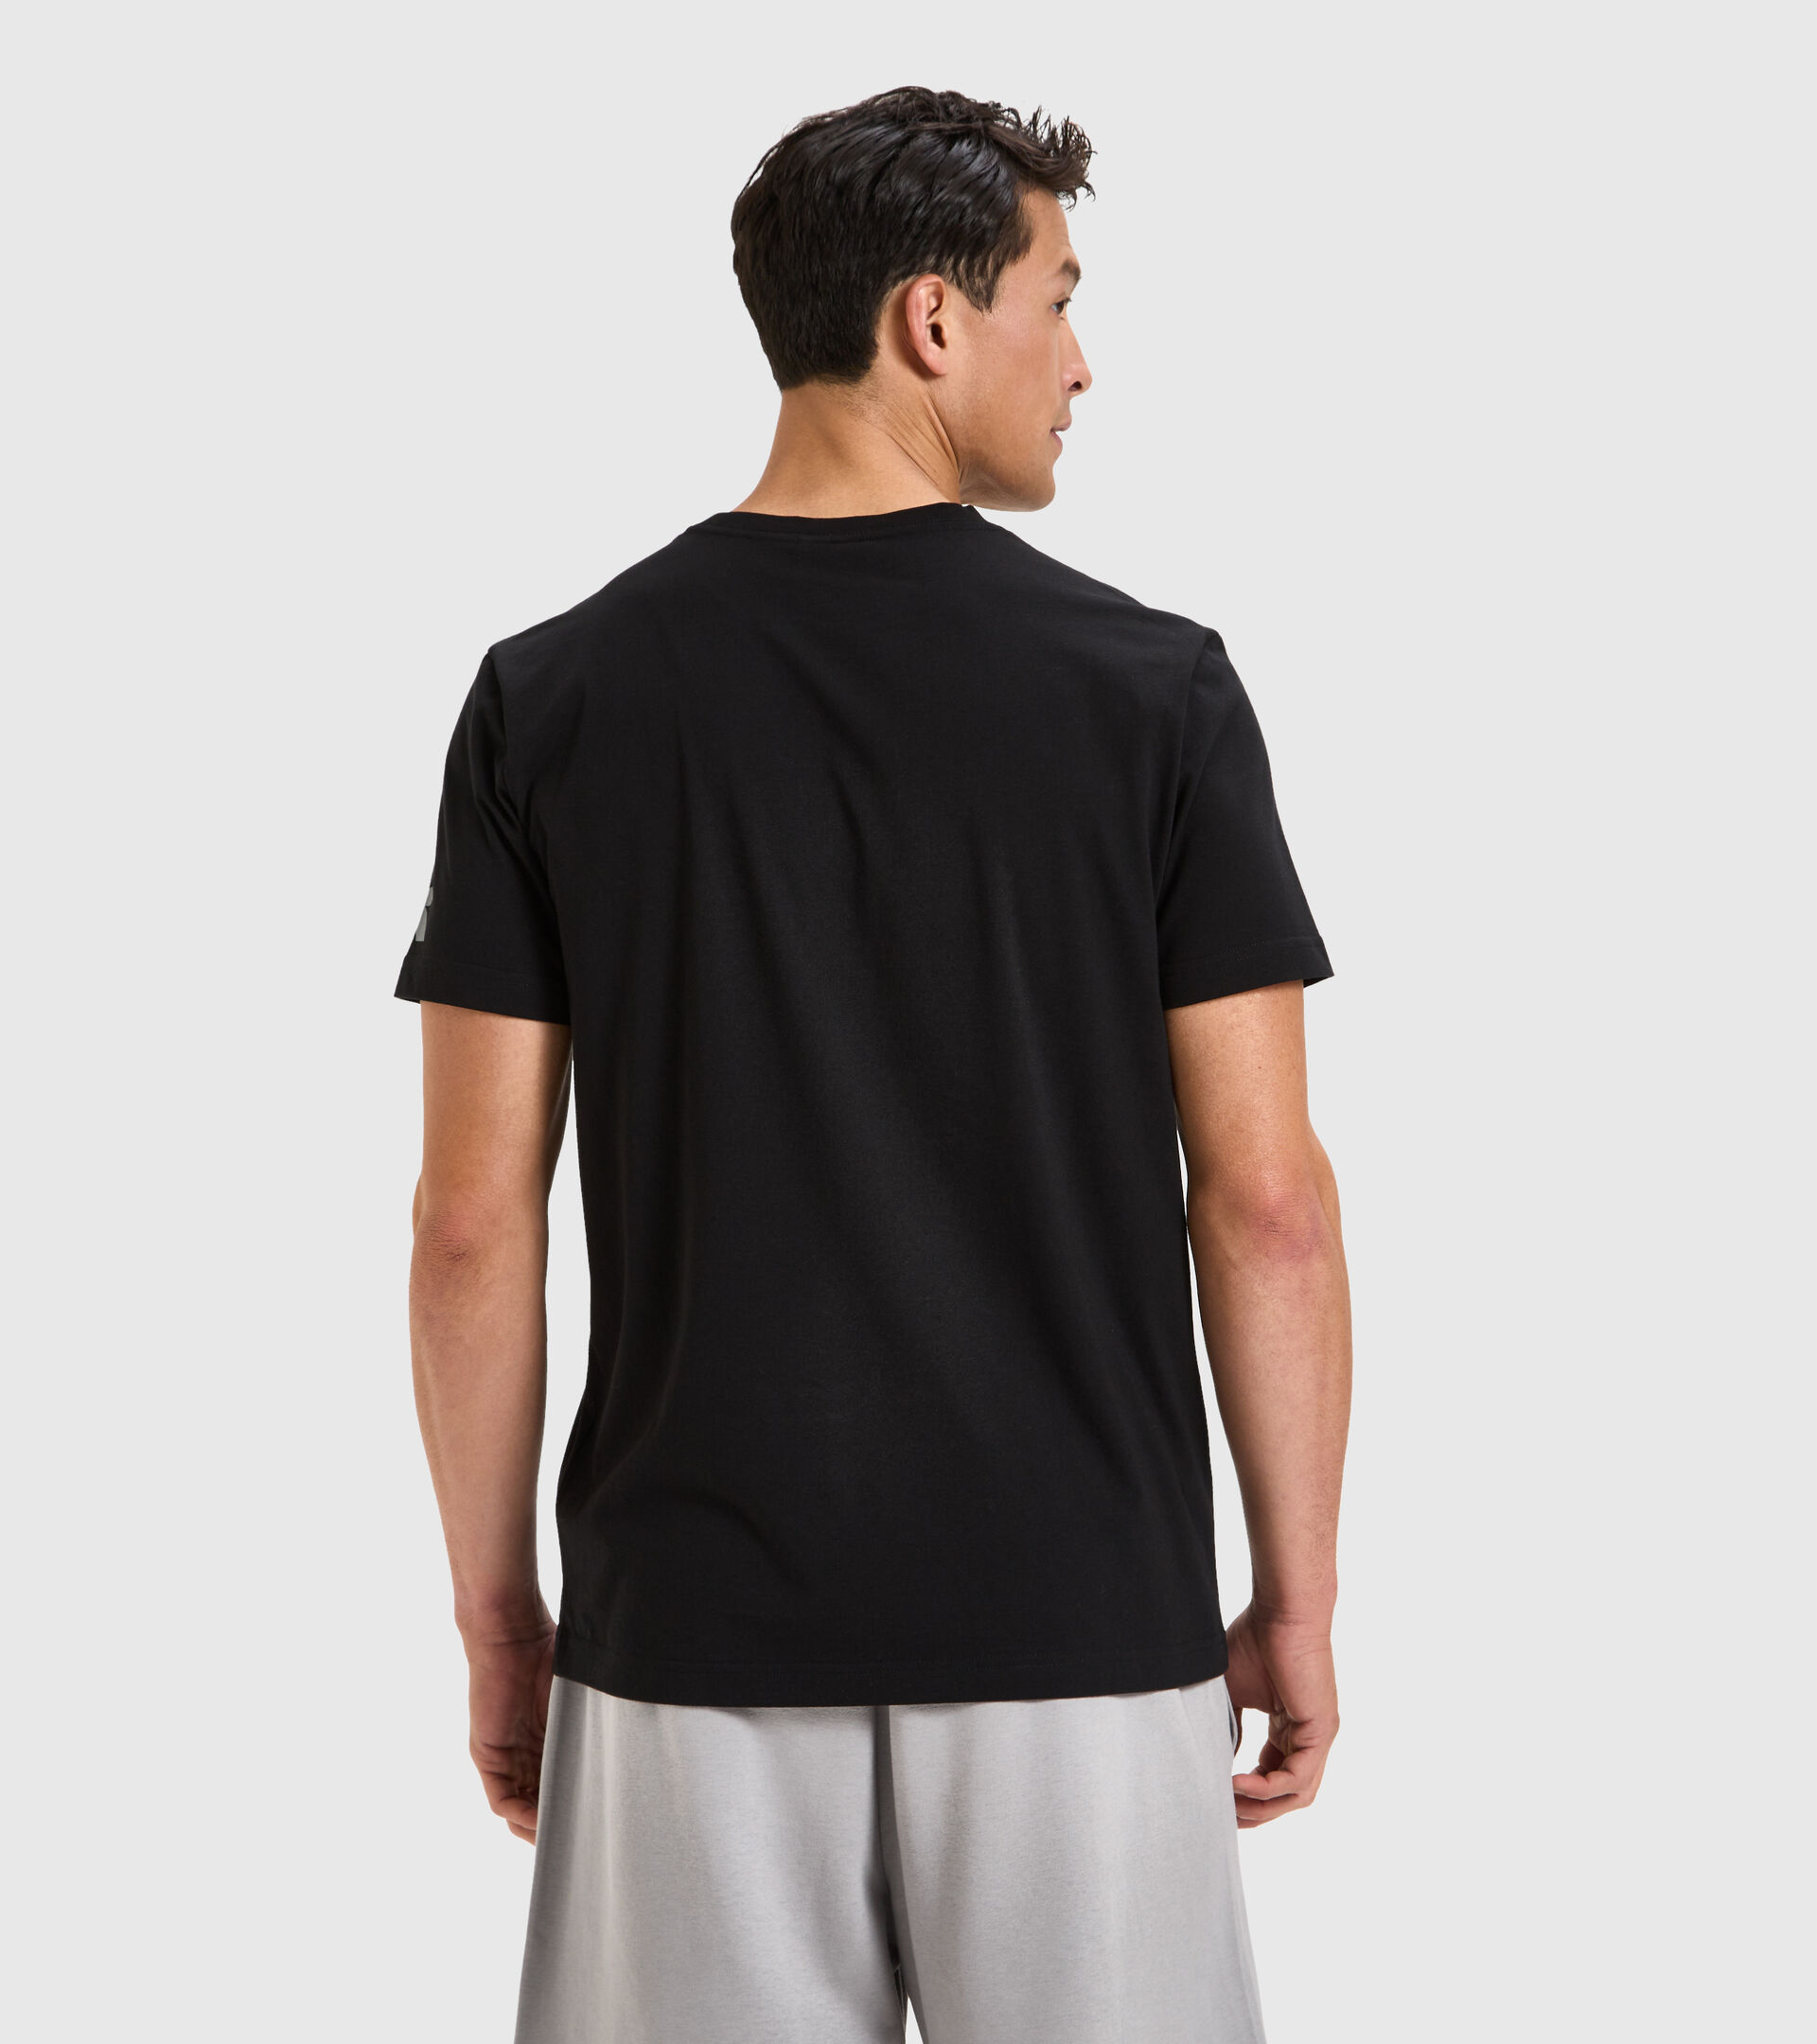 Cotton T-shirt - Men T-SHIRT SS TWIST BLACK - Diadora